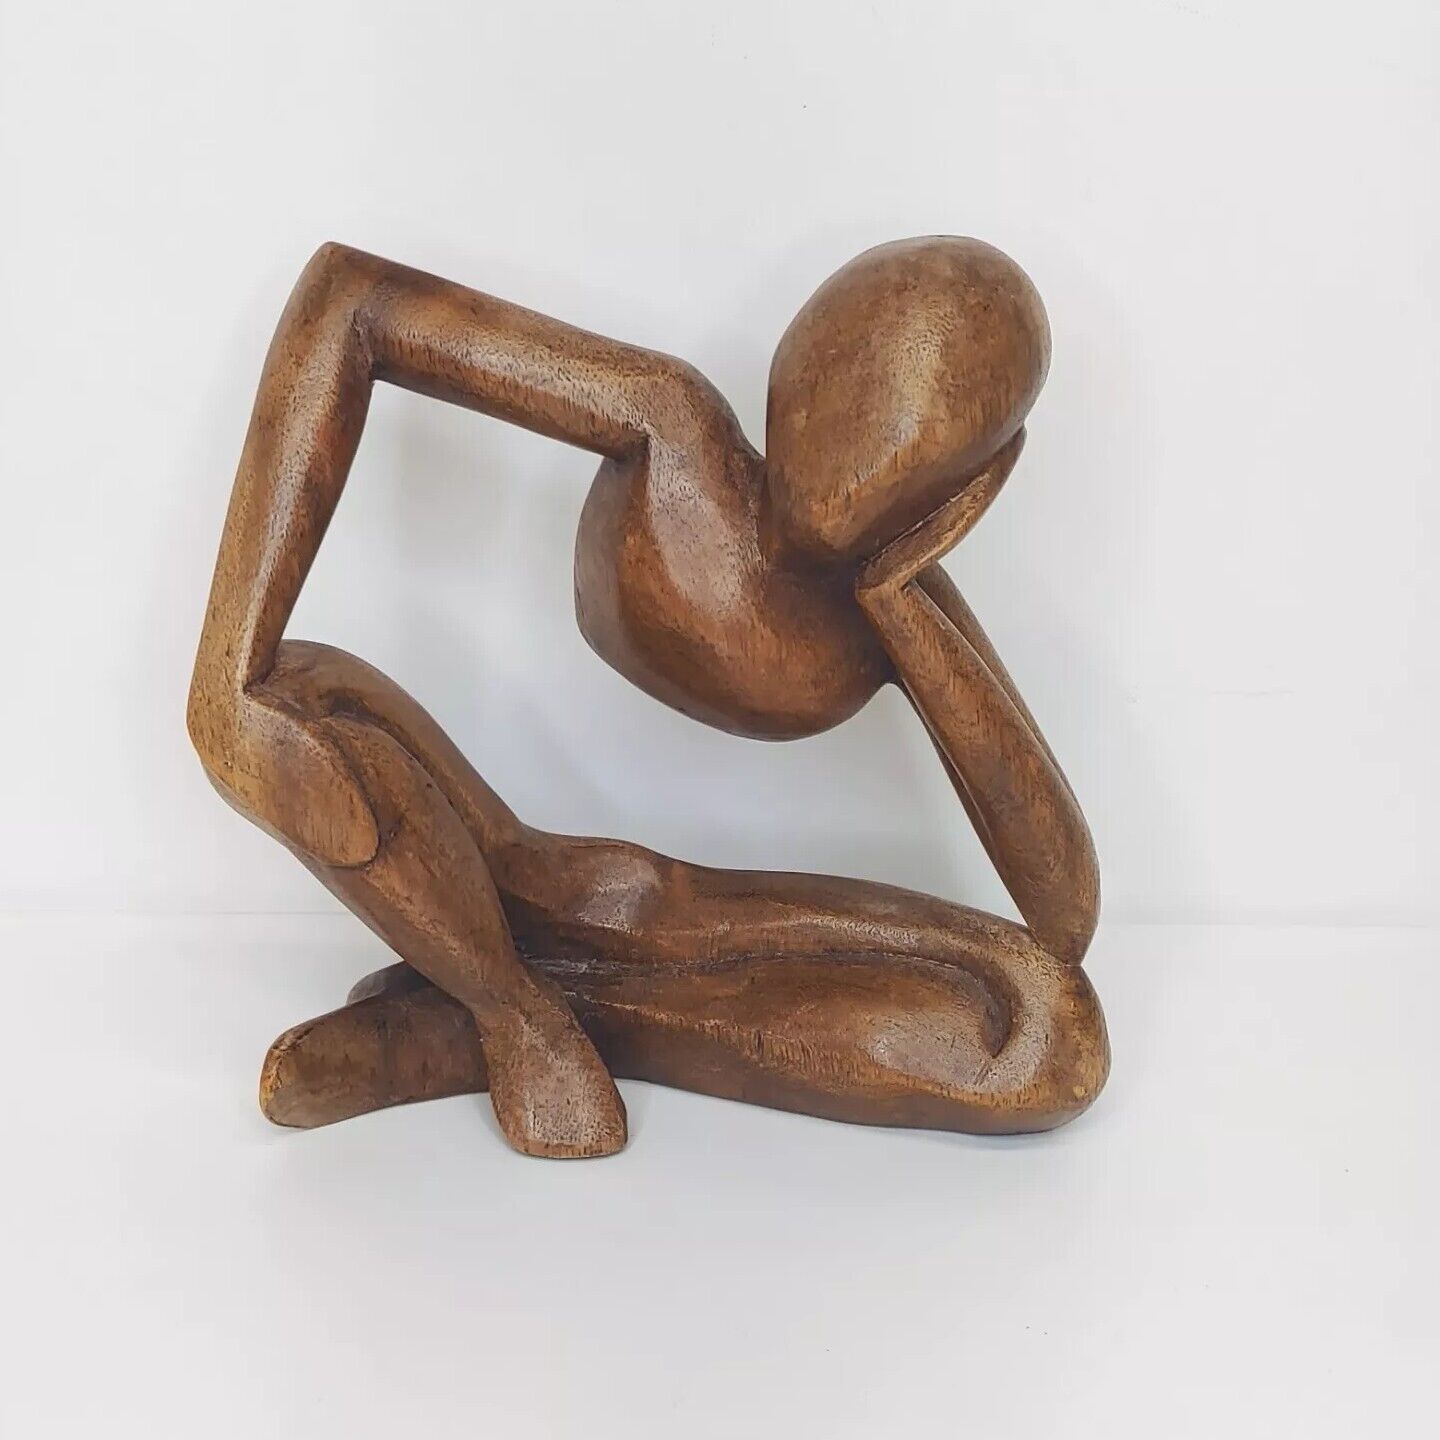 Vintage Wooden Sculpture Person Crossed Legs Decor Art